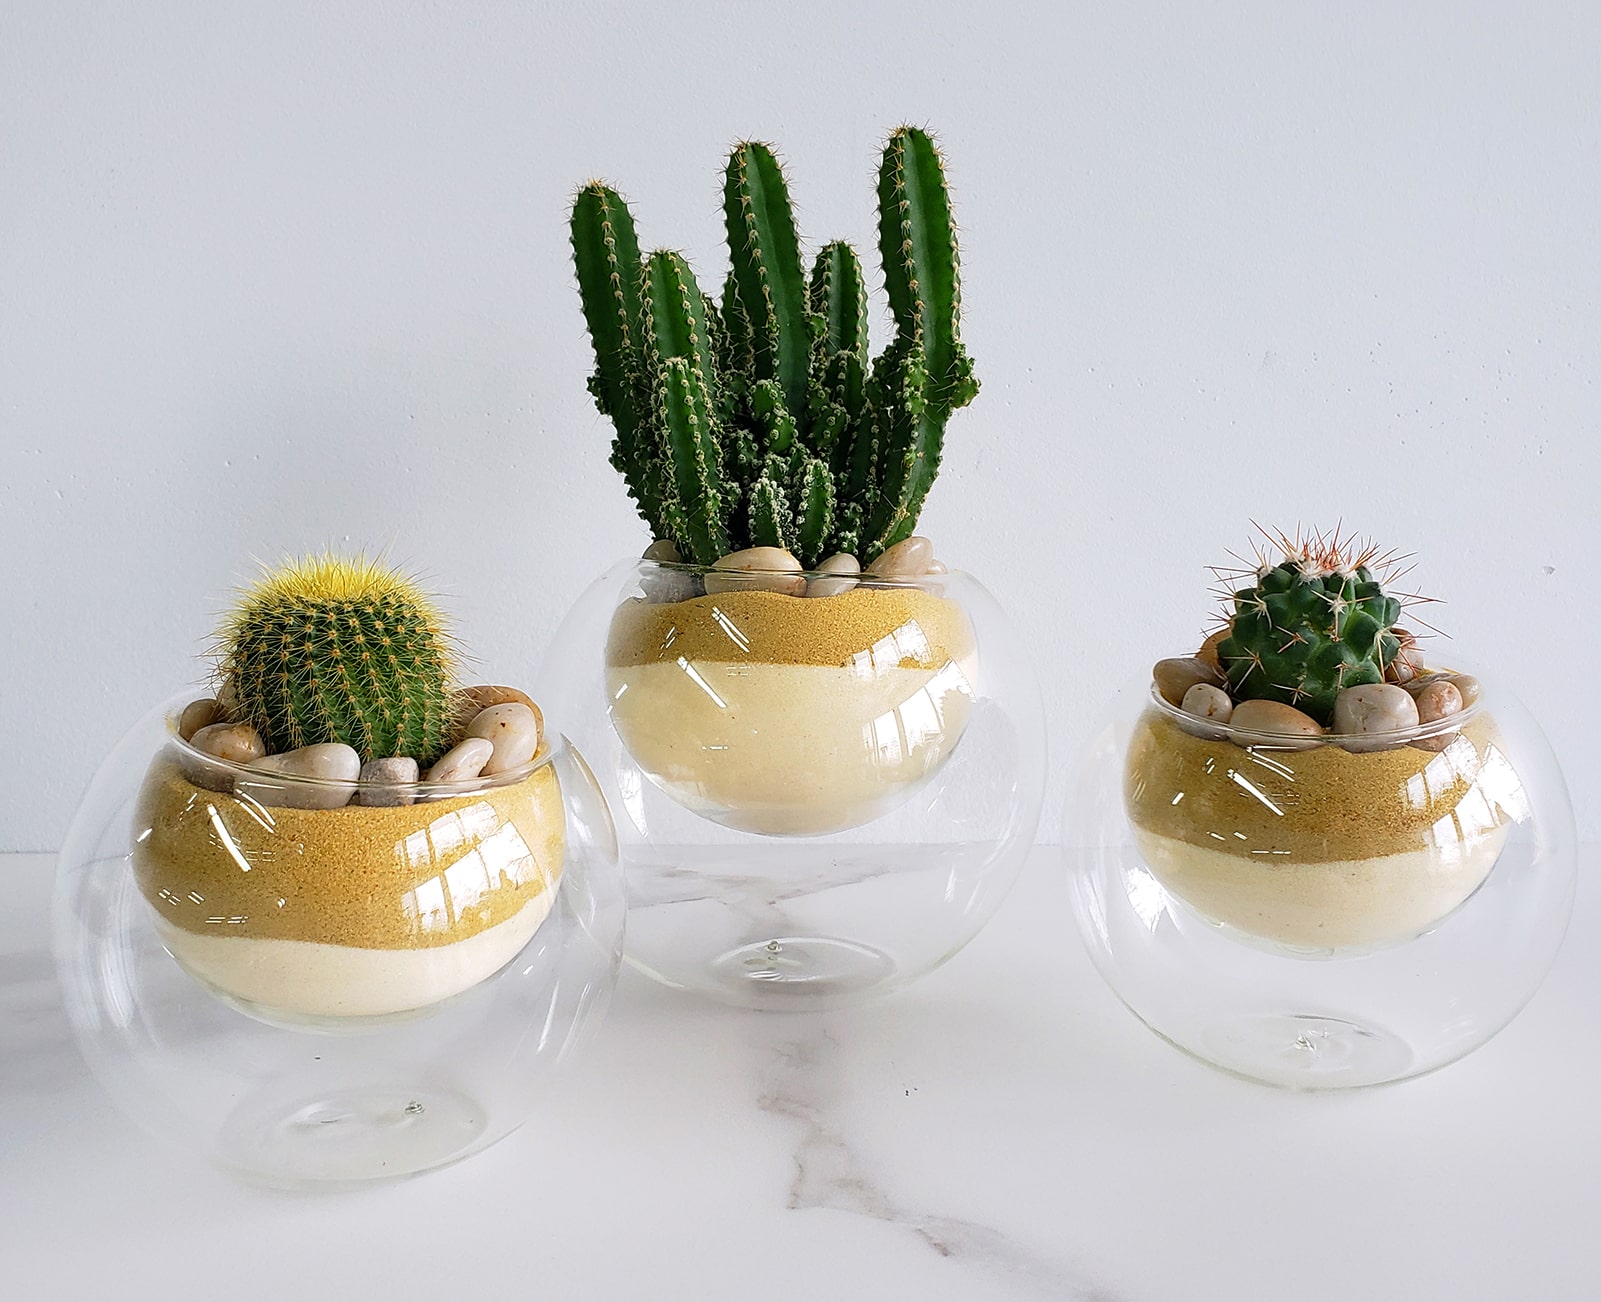 Cactus trio